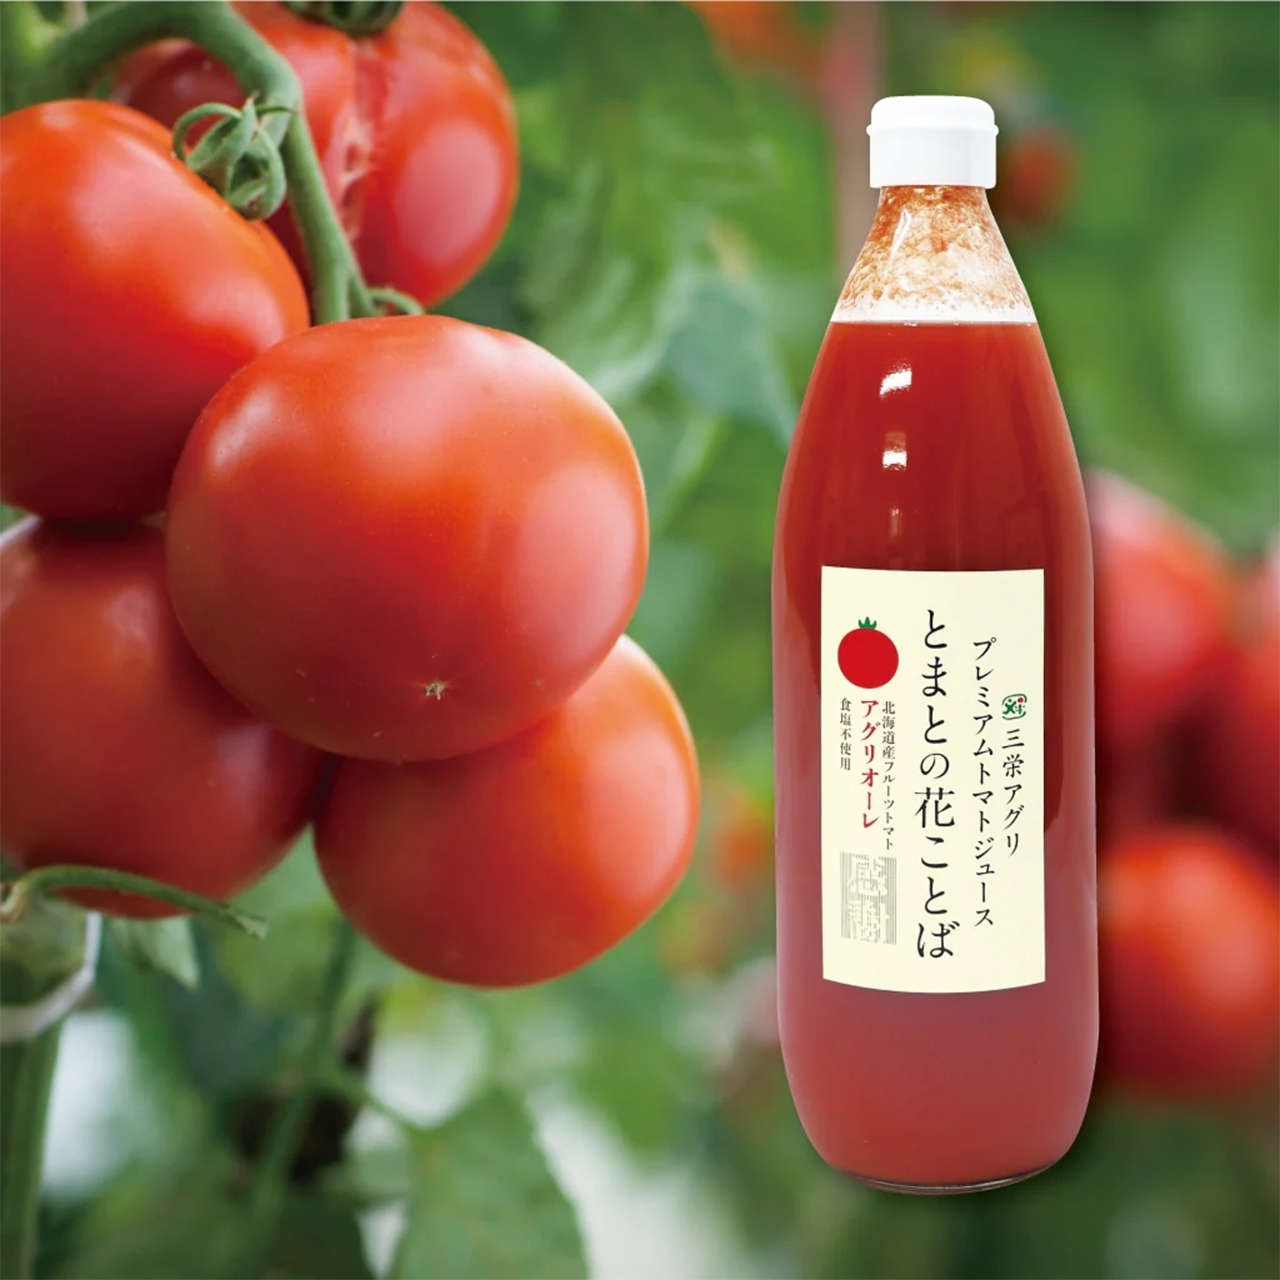 北海道三栄アグリの無添加トマトジュースがリニューアルしました